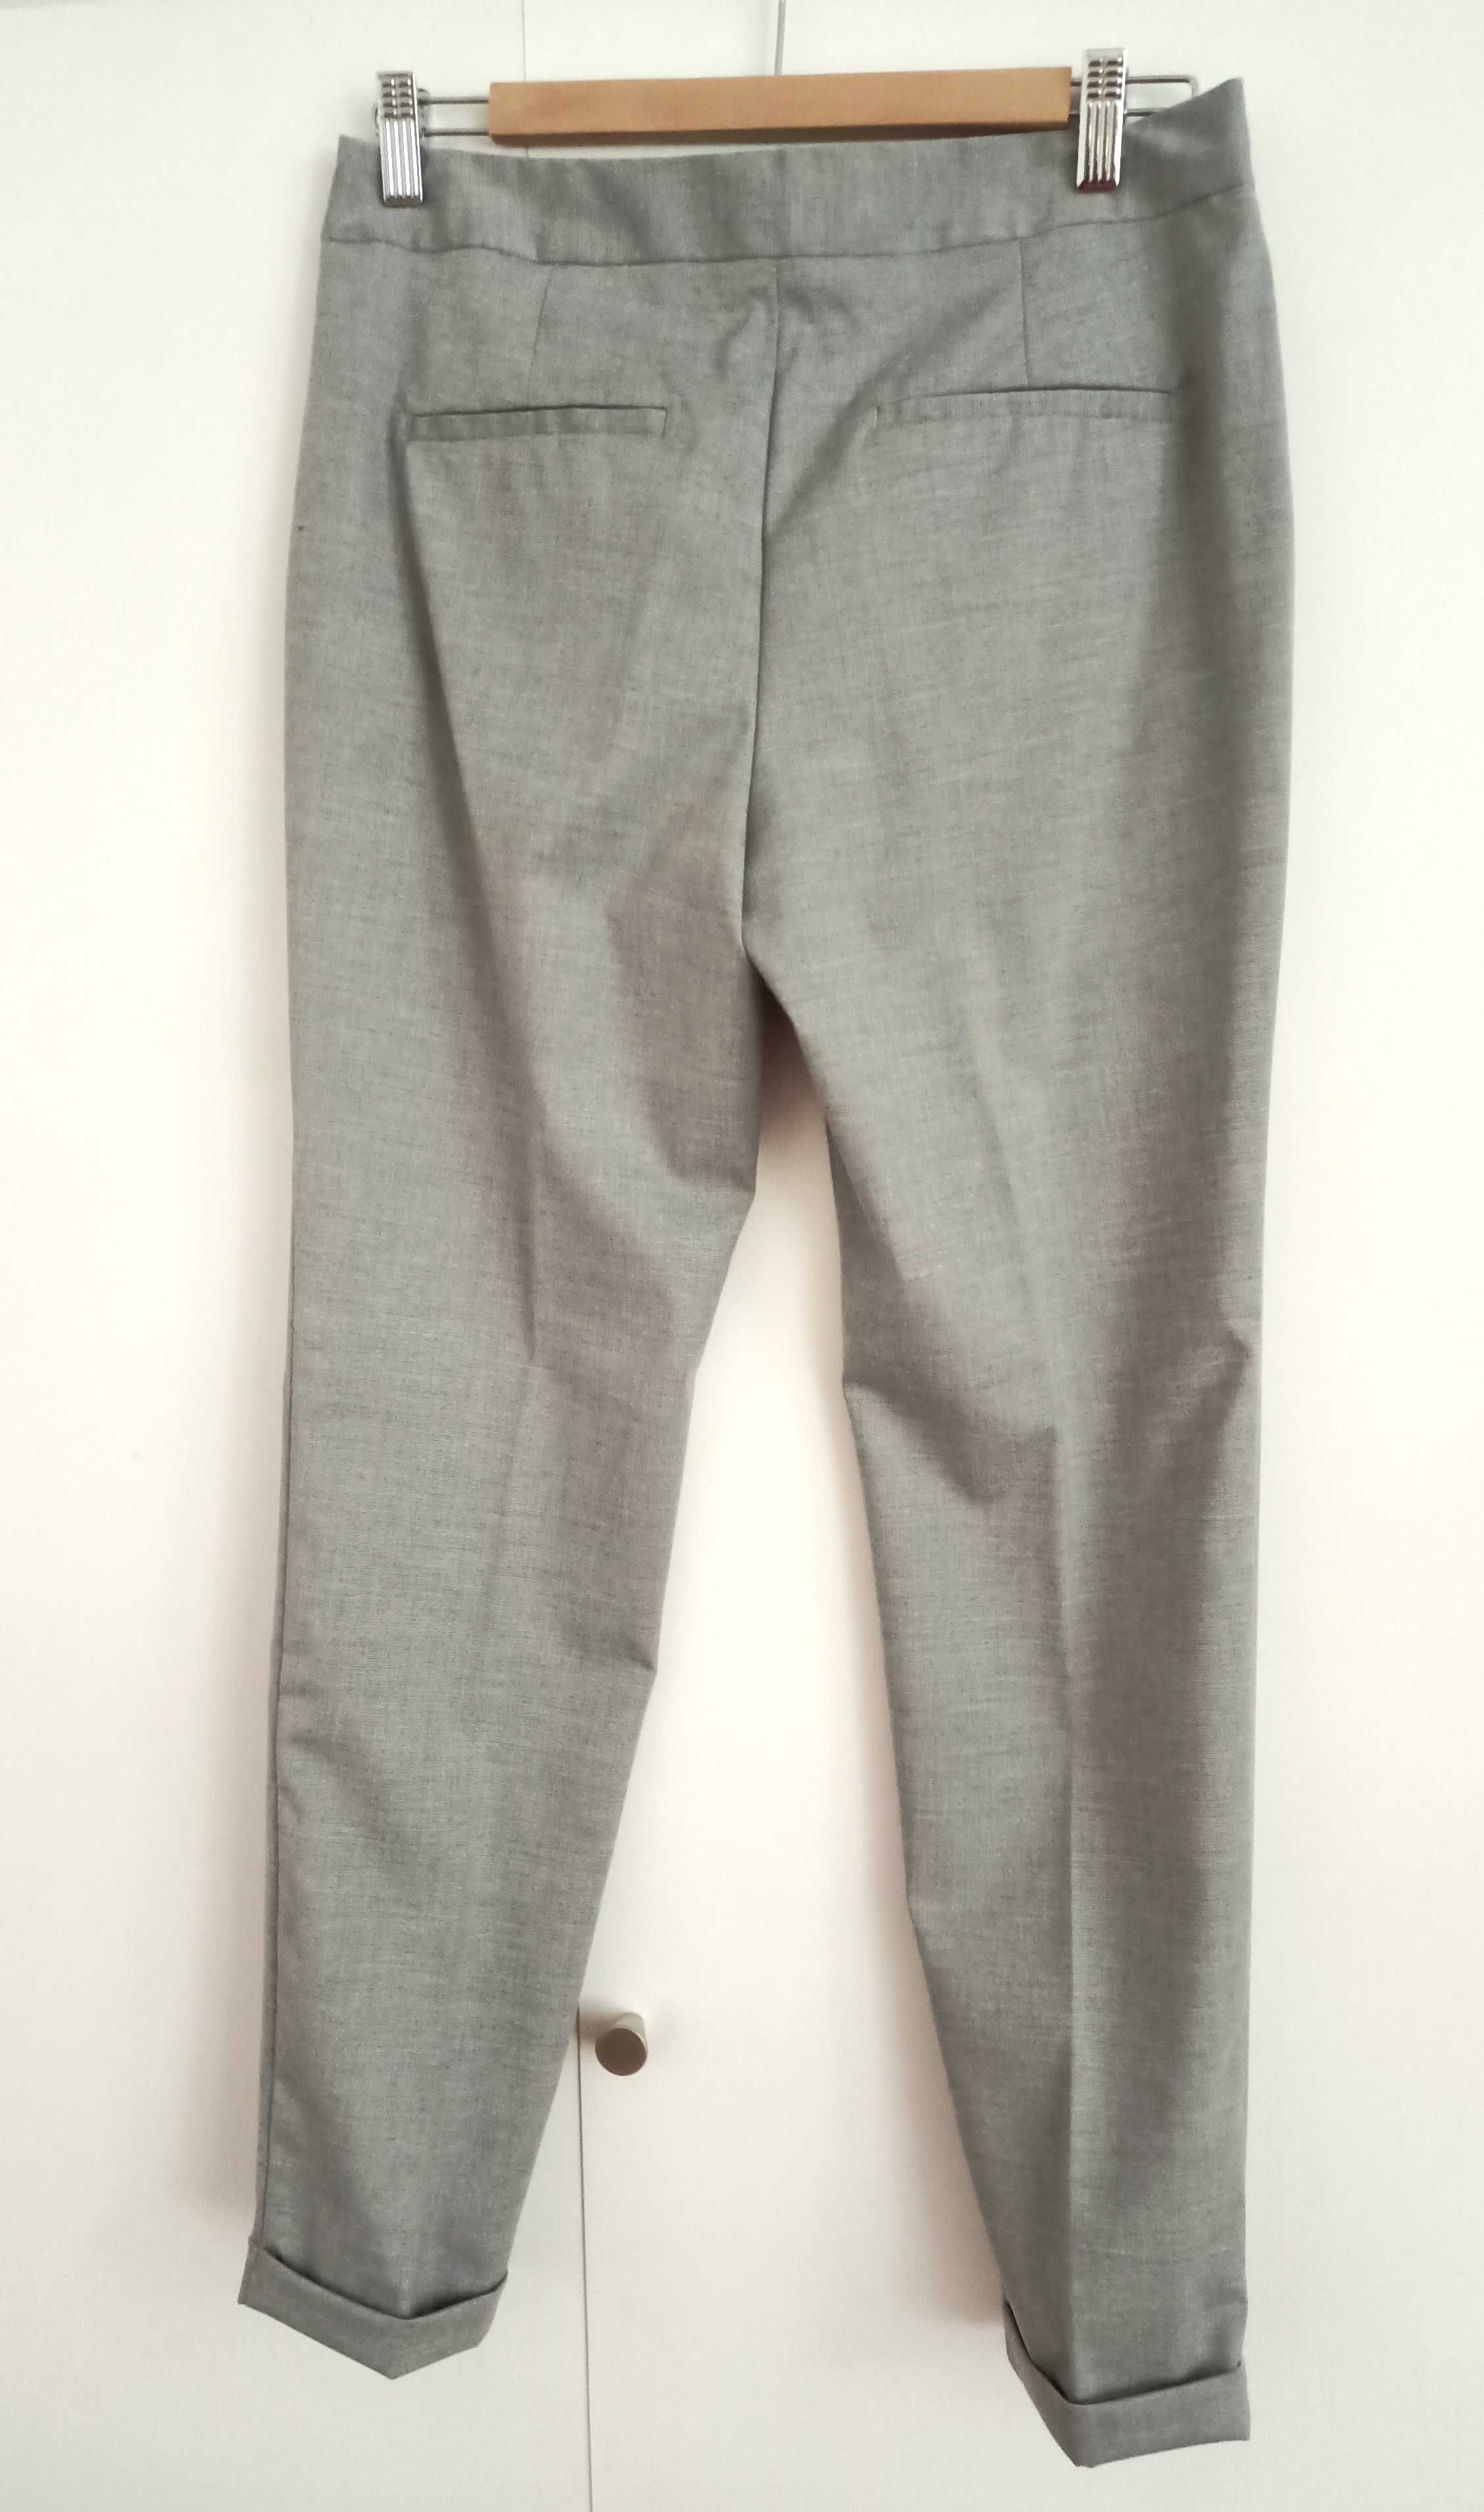 Spodnie Zara Basic rurki slim fit, szare, rozmiar 36.